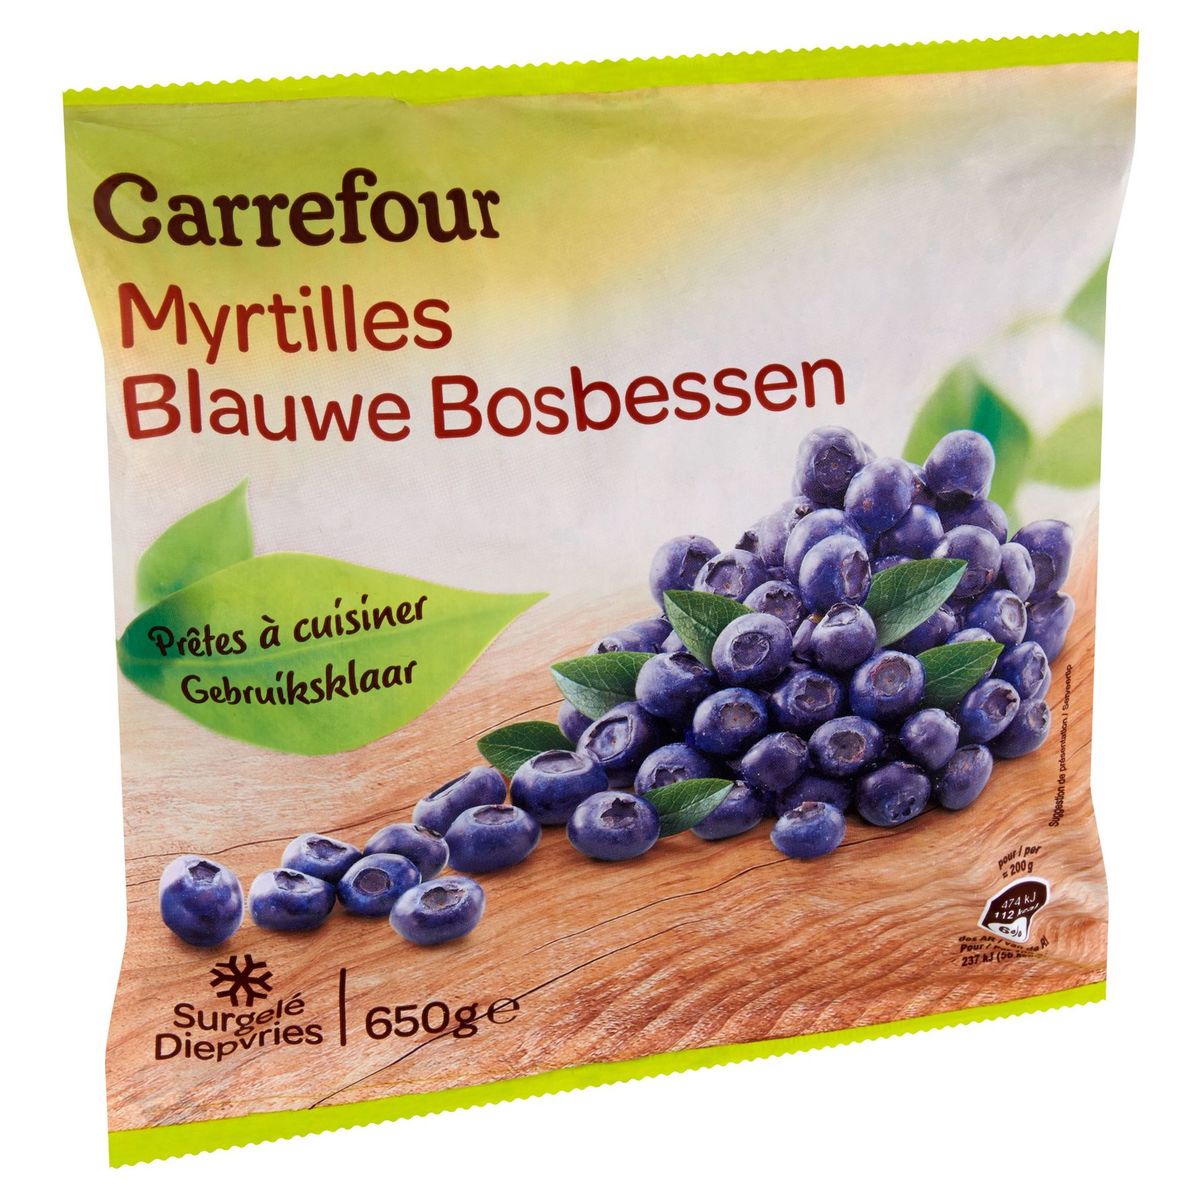 Carrefour Blauwe Bosbessen 650 g